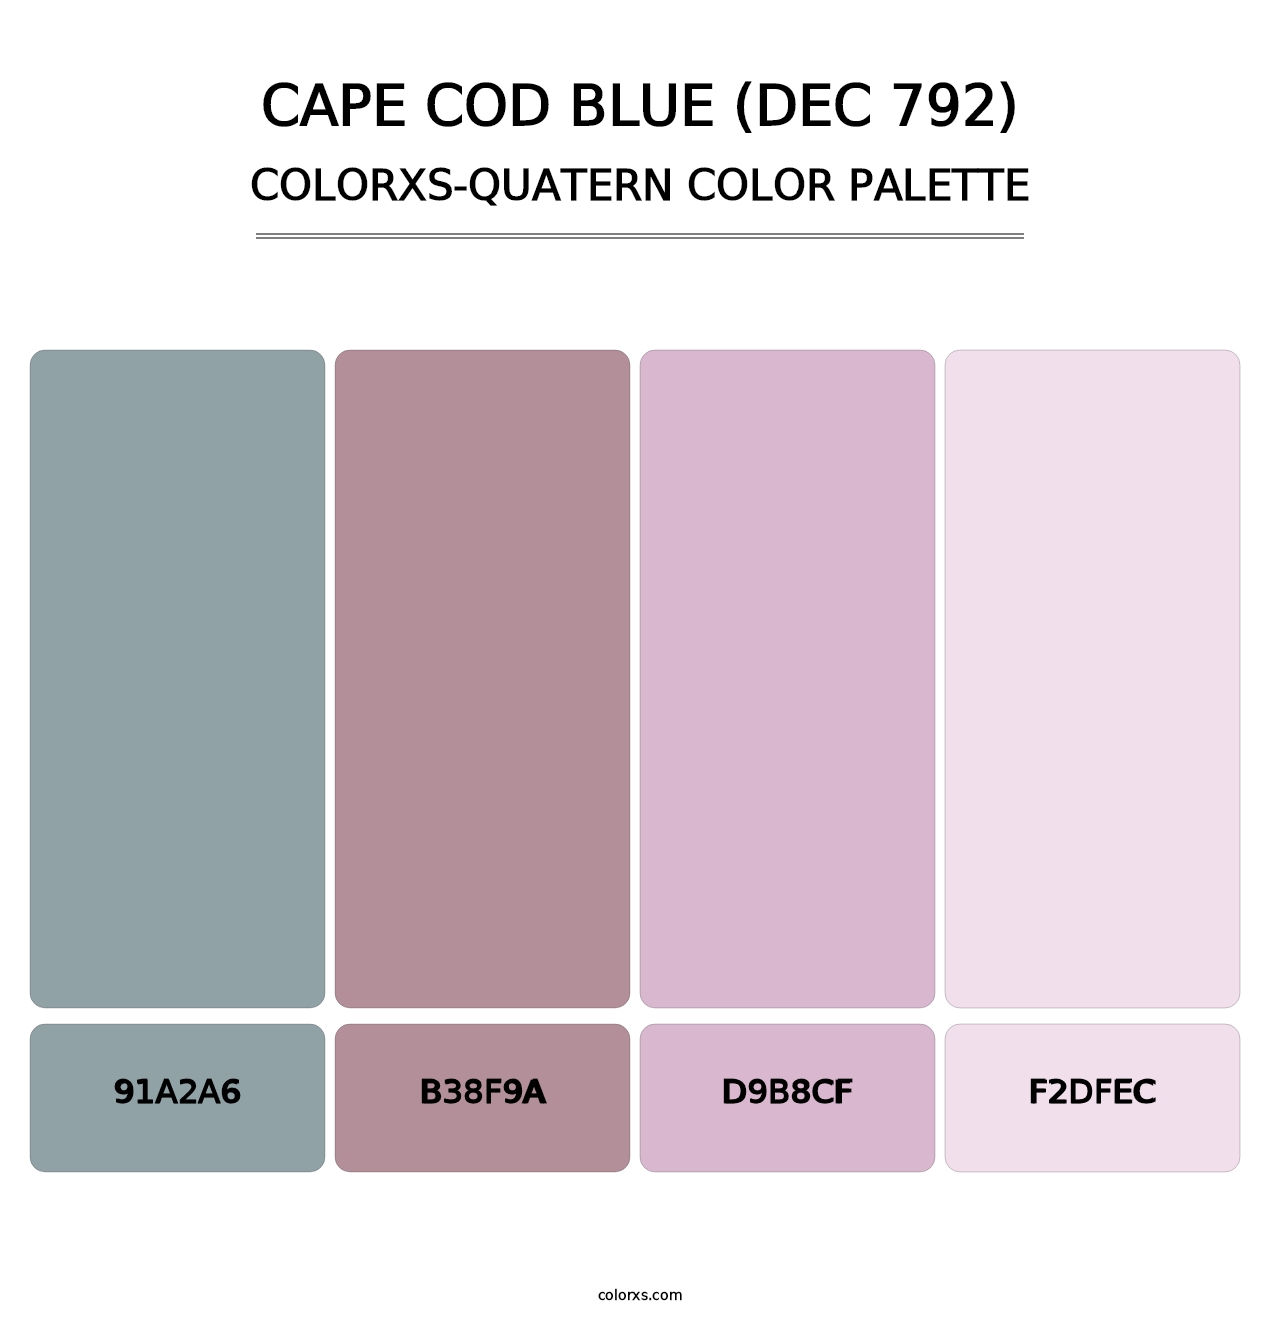 Cape Cod Blue (DEC 792) - Colorxs Quatern Palette